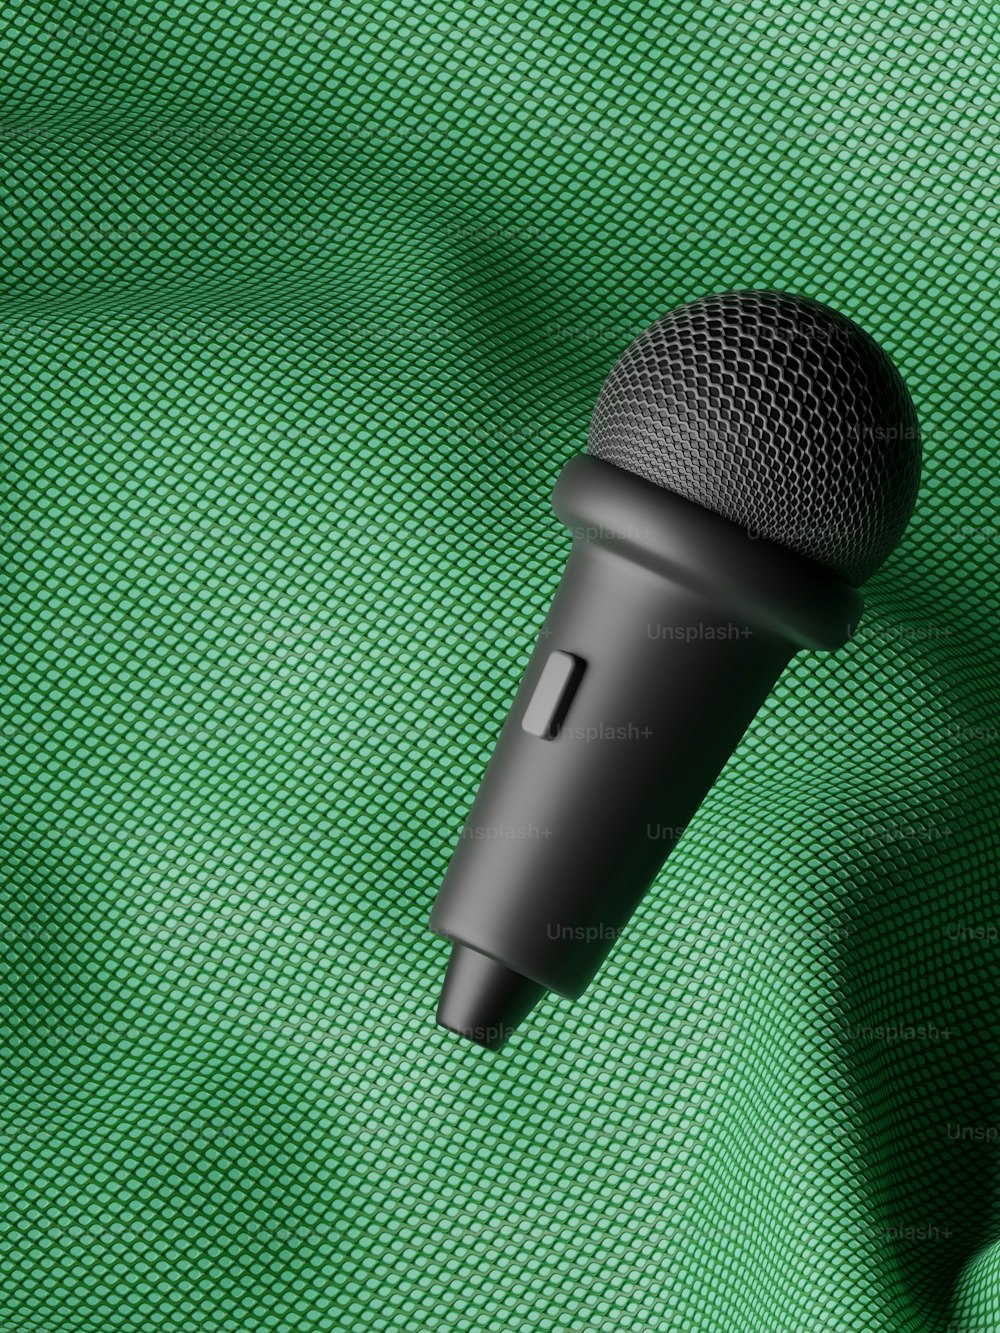 Un micrófono negro sobre fondo verde